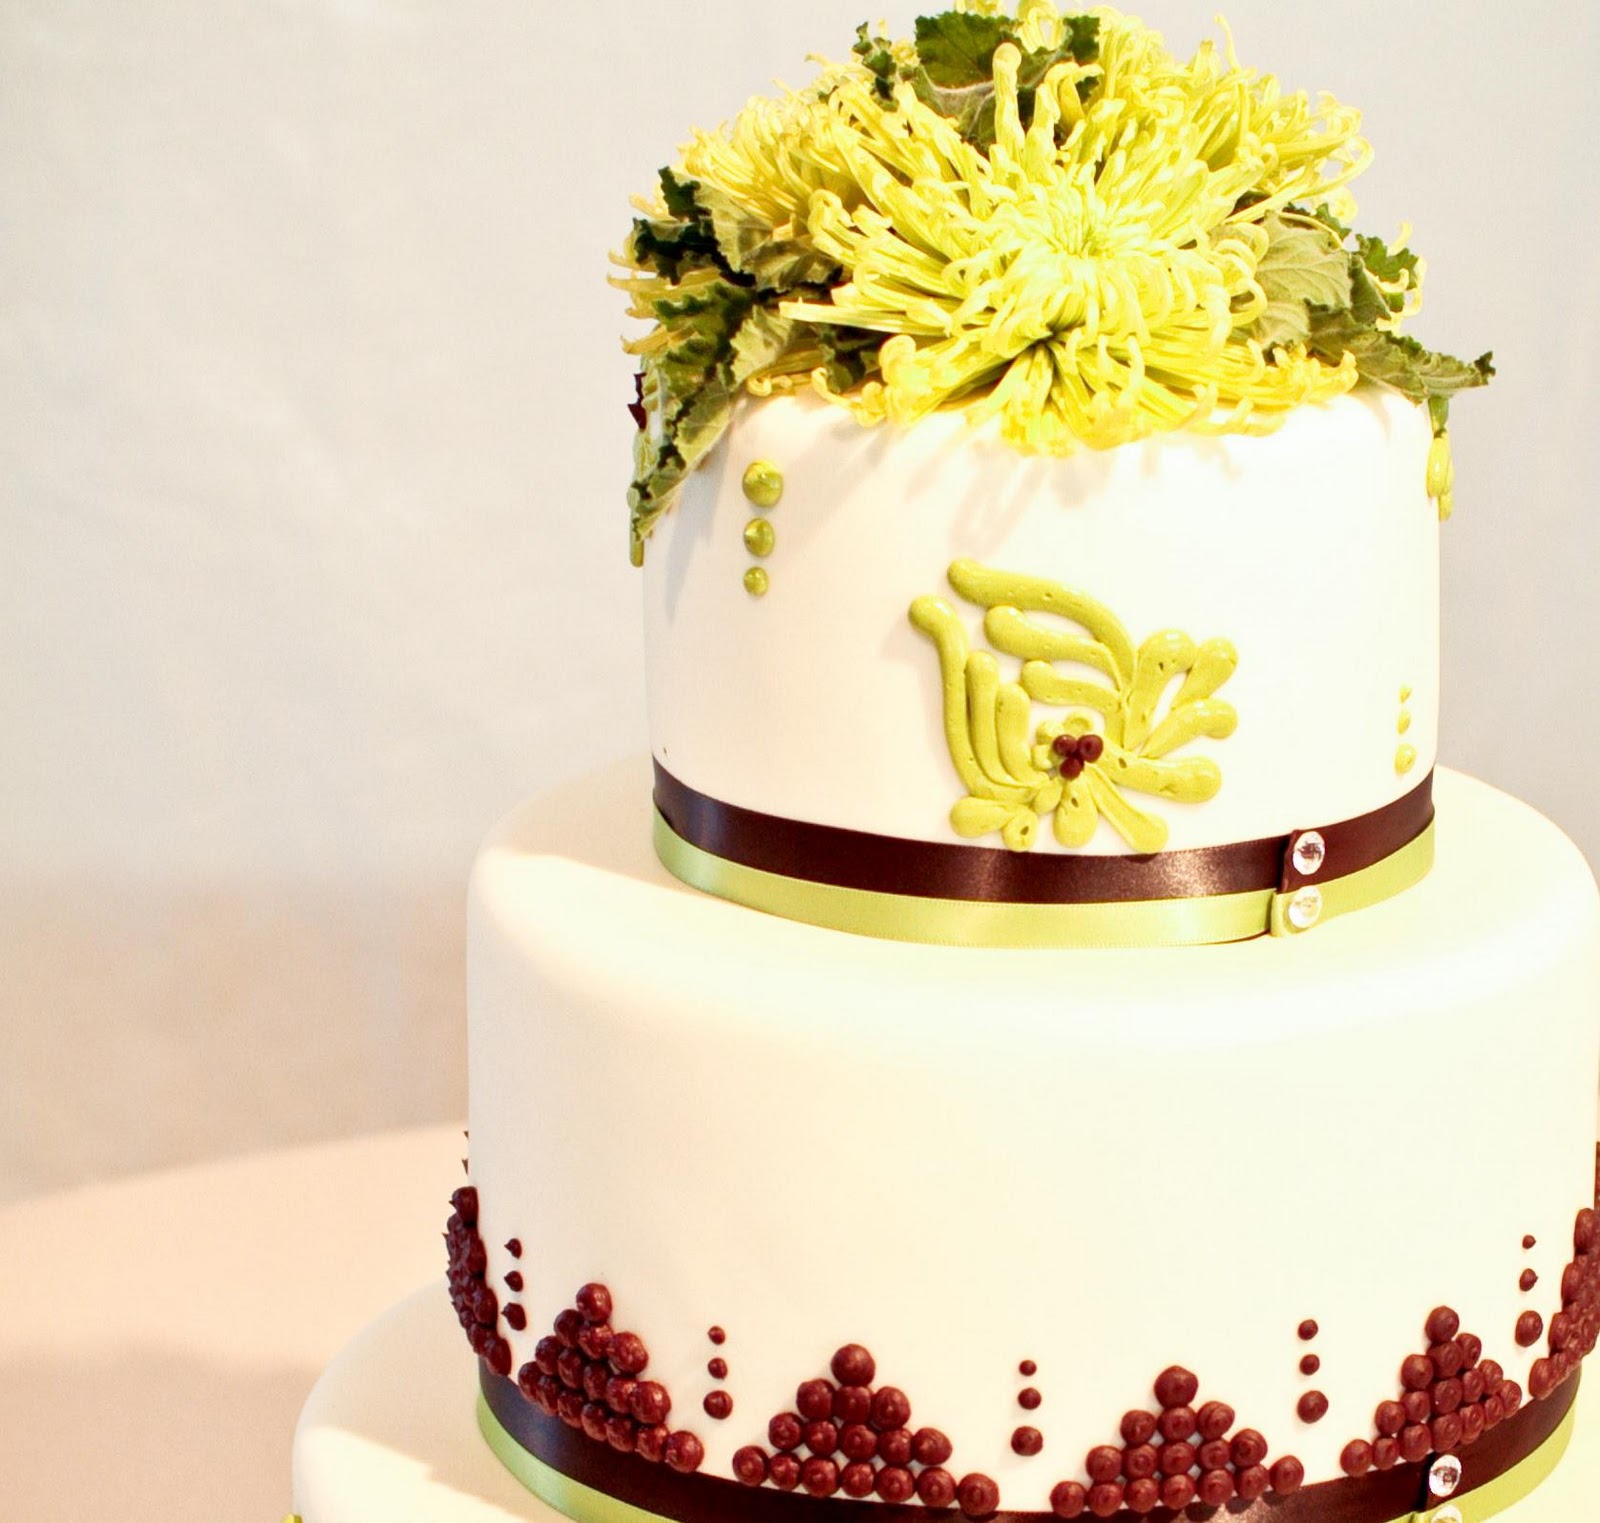 Green Spider mum wedding cake